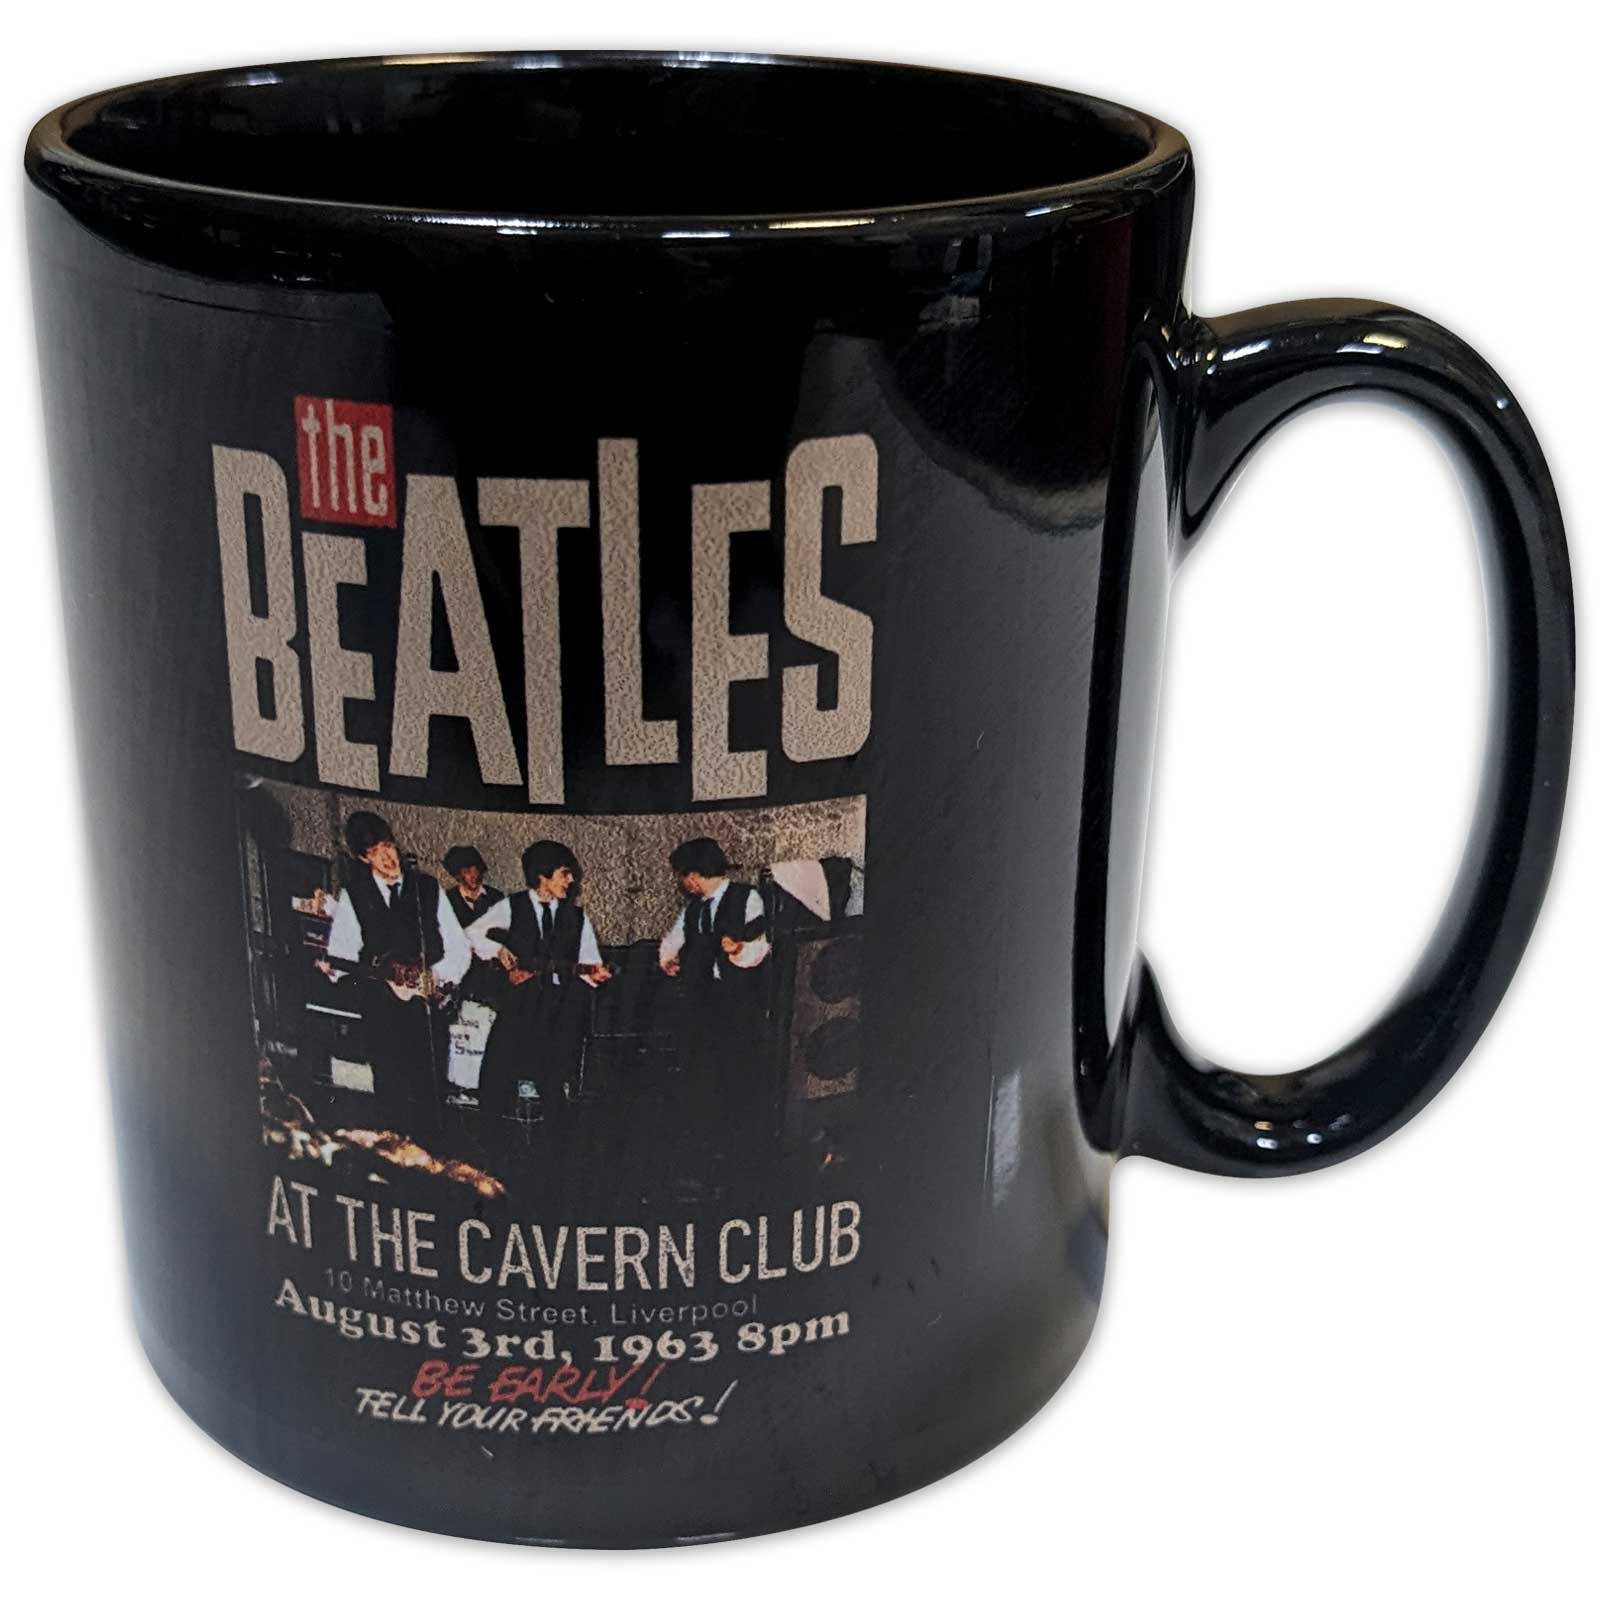 THE BEATLES ザ・ビートルズ (ABBEY ROAD発売55周年記念 ) - Cavern / マグカップ 【公式 / オフィシャル】